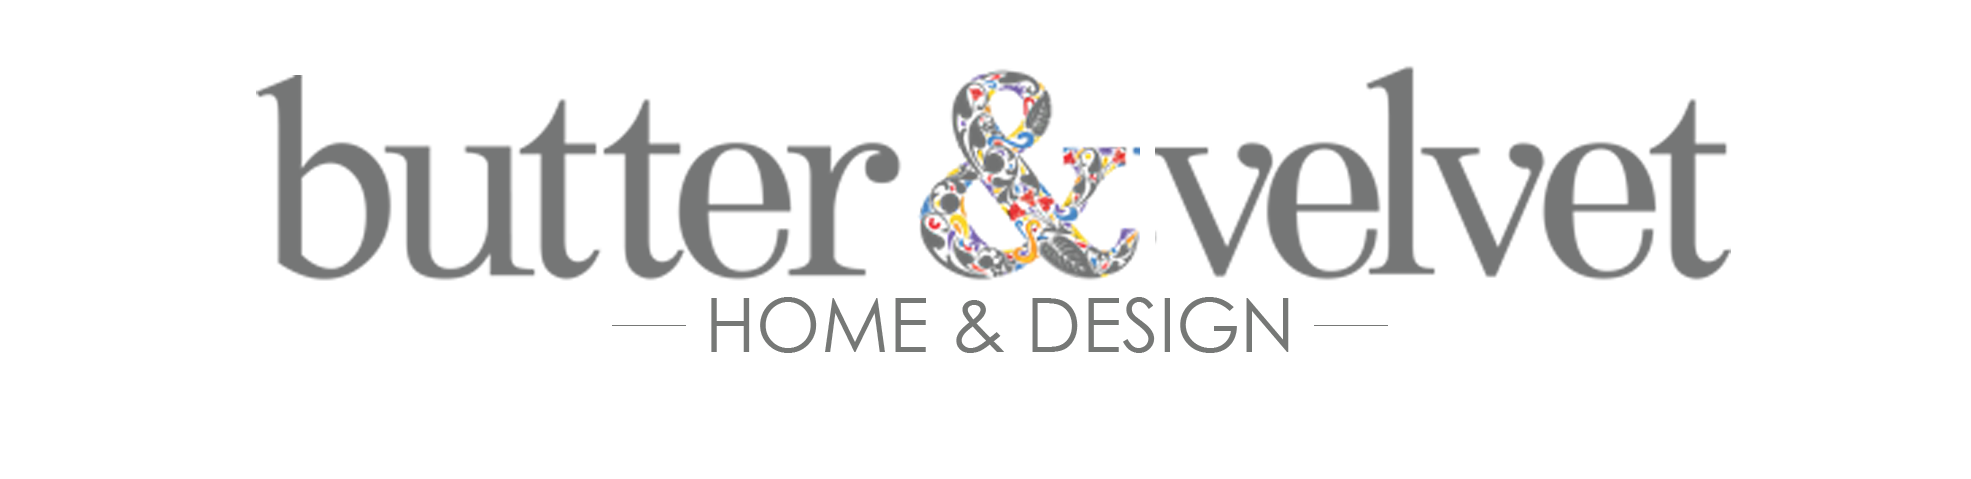 butter&velvet Home & Design logo